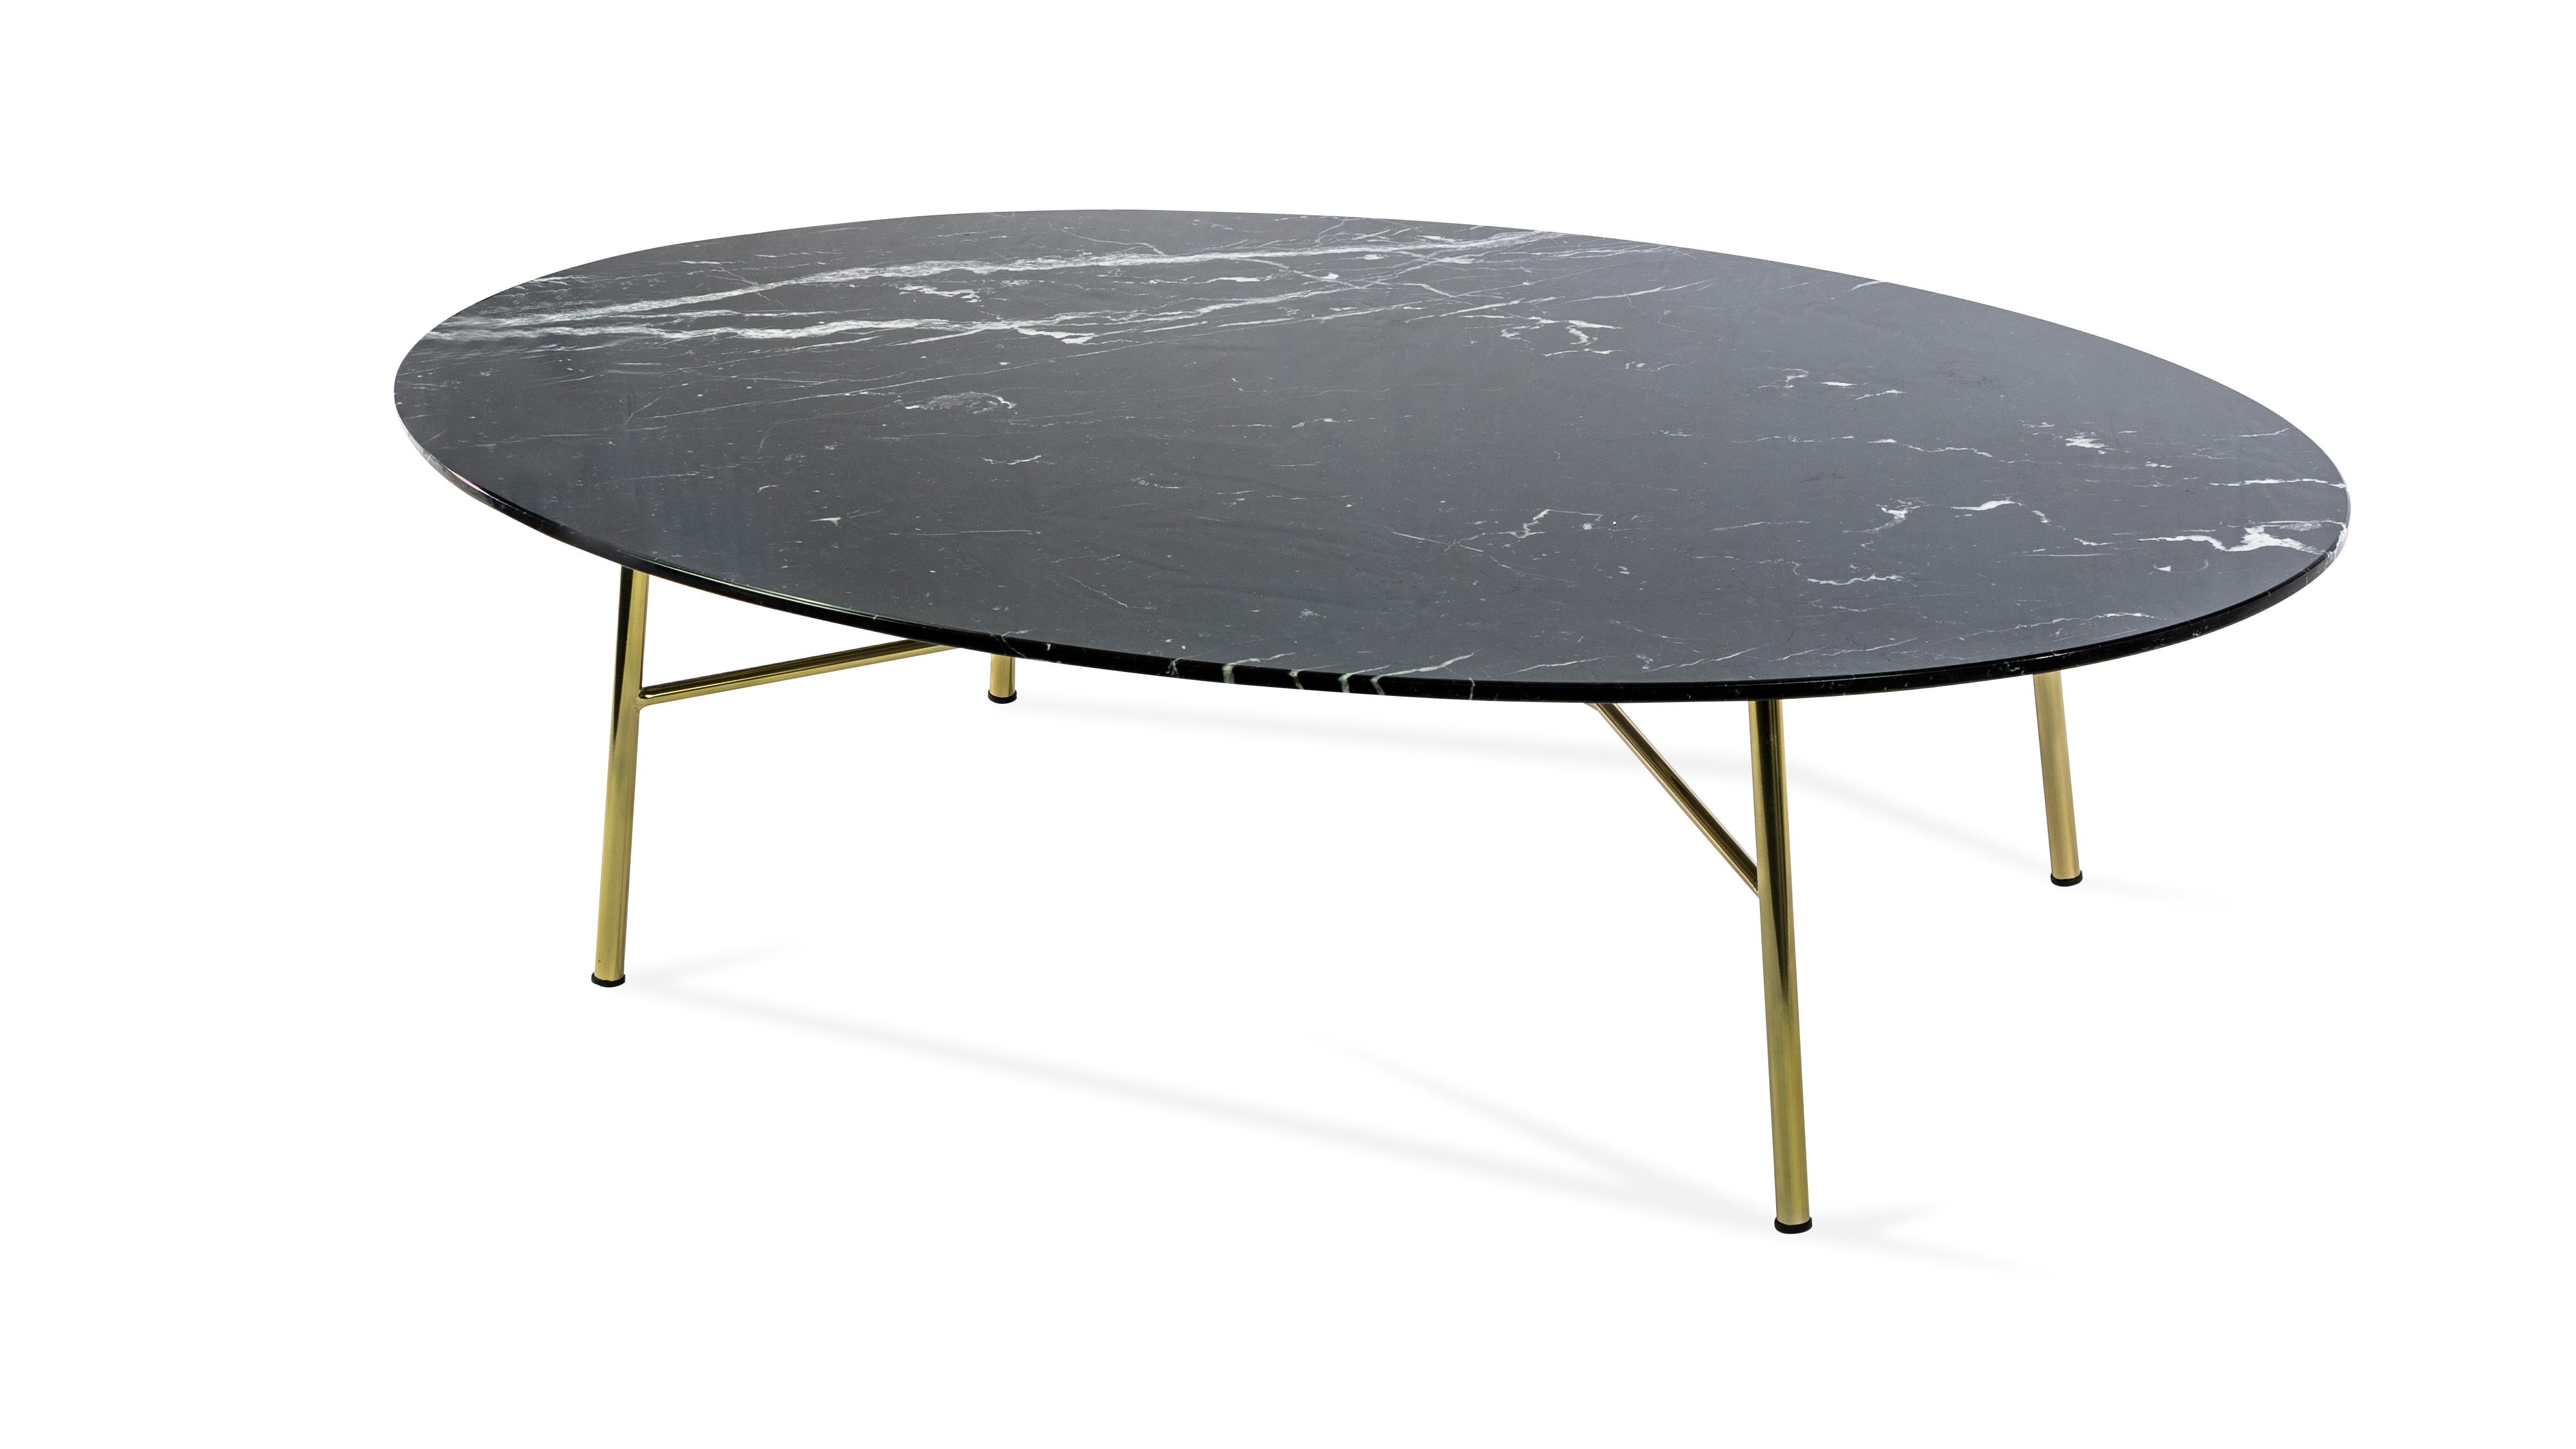 italien Petite table Yuki, cadre métallique, rond, couleur noire, design, table basse